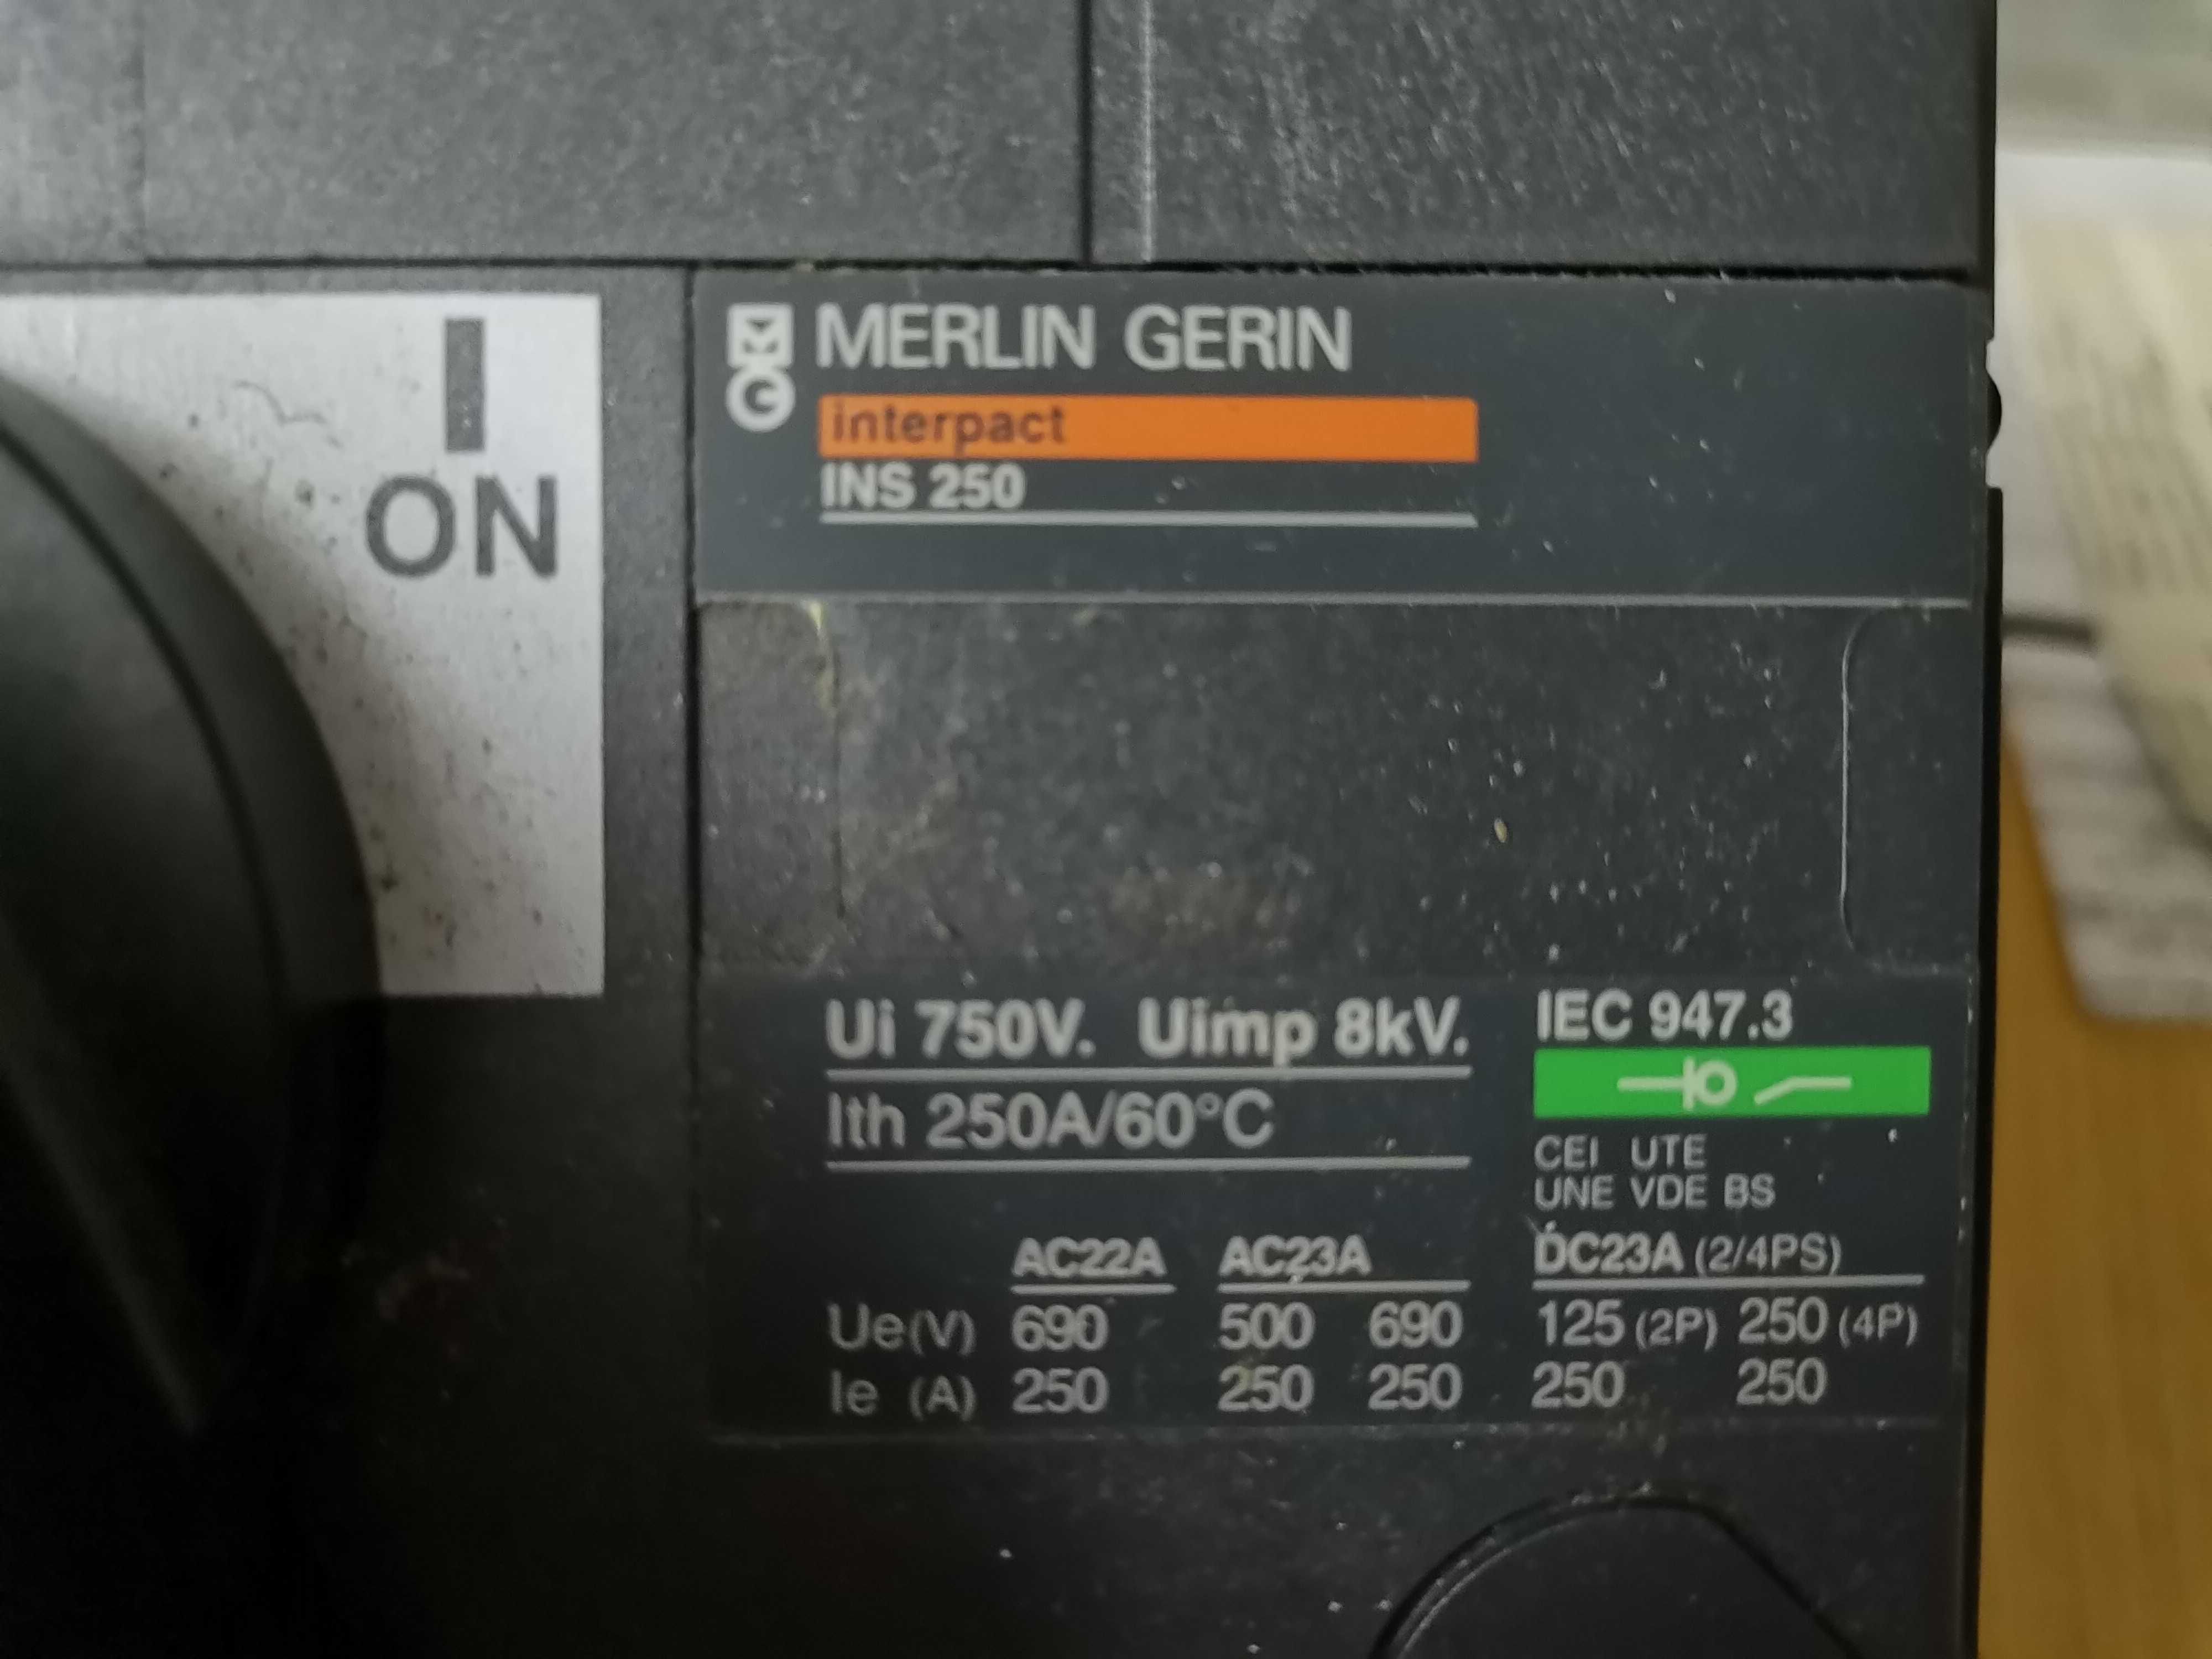 Interruptor Seccionador Interpac INS250 4P Refª 31107 da Merlin Gerin